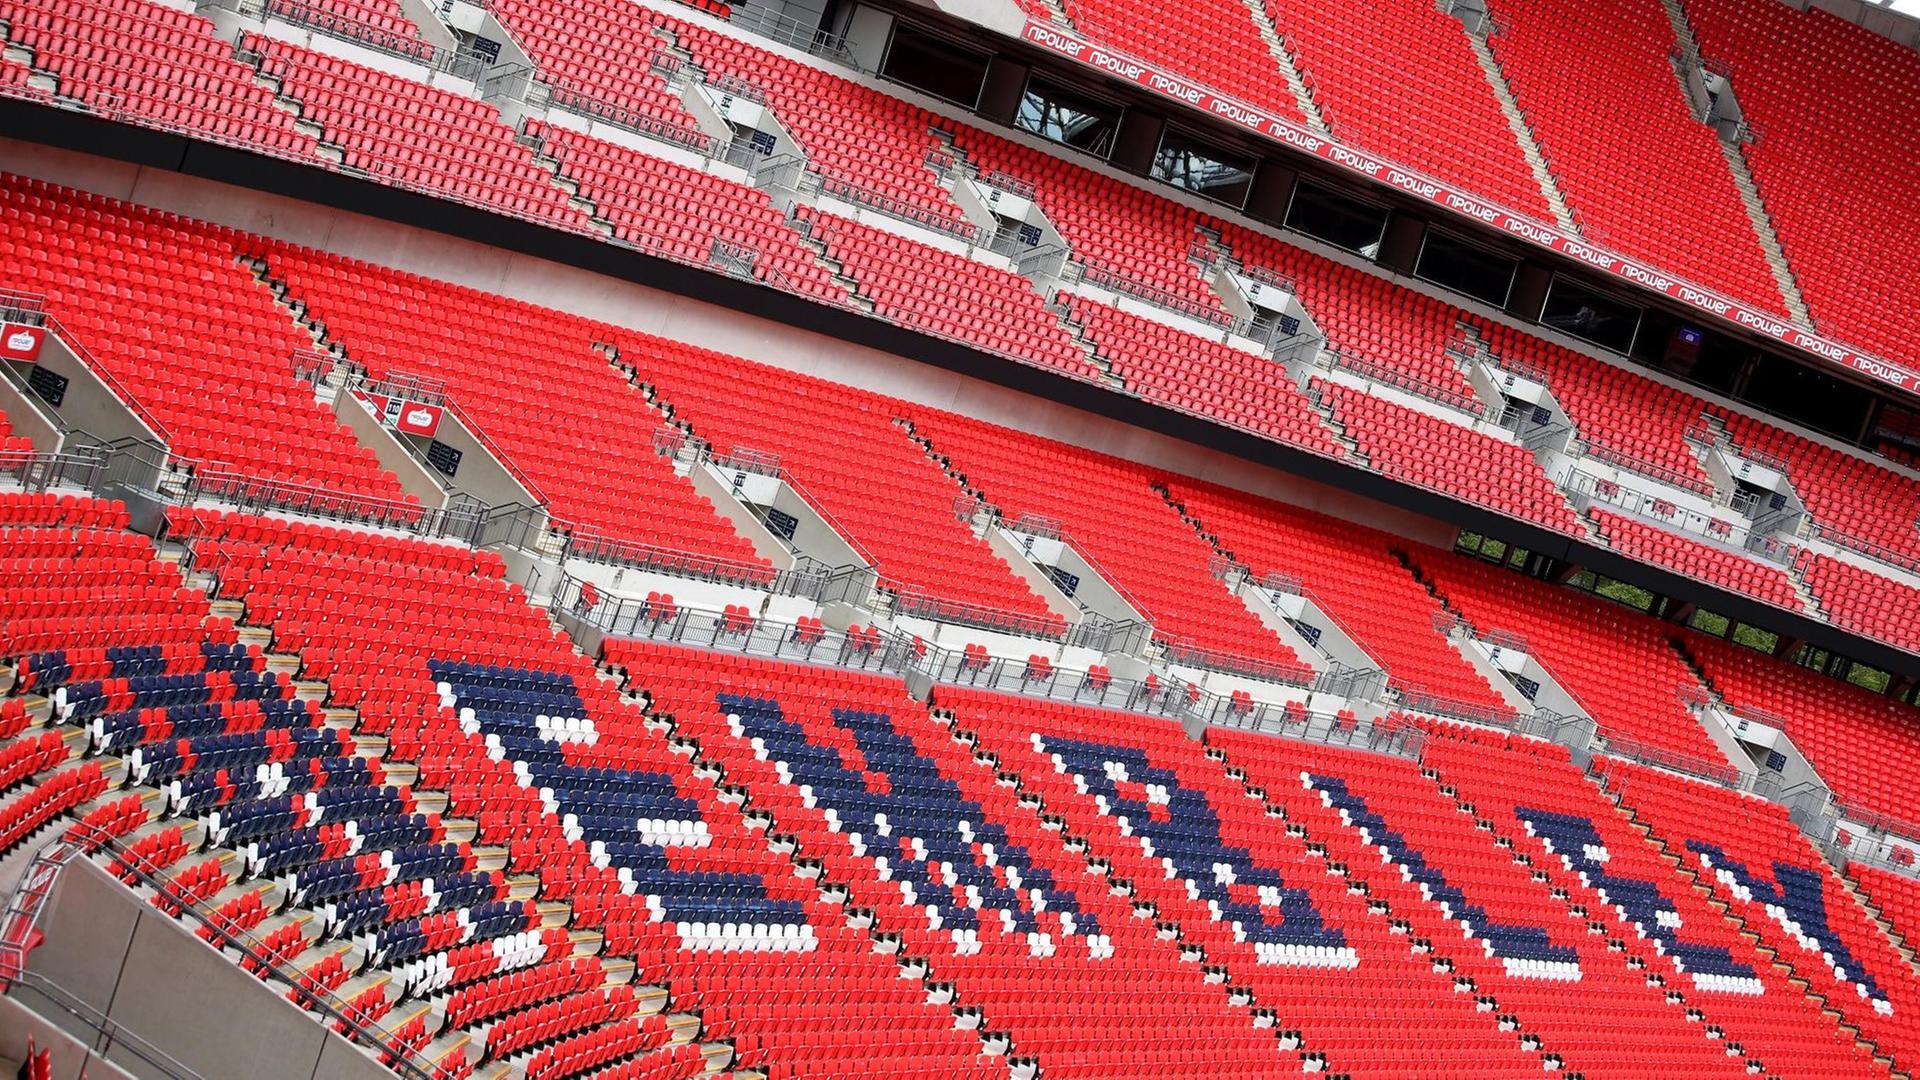 Blick in das Wembley Stadion in London, aufgenommen am 16.05.2013.